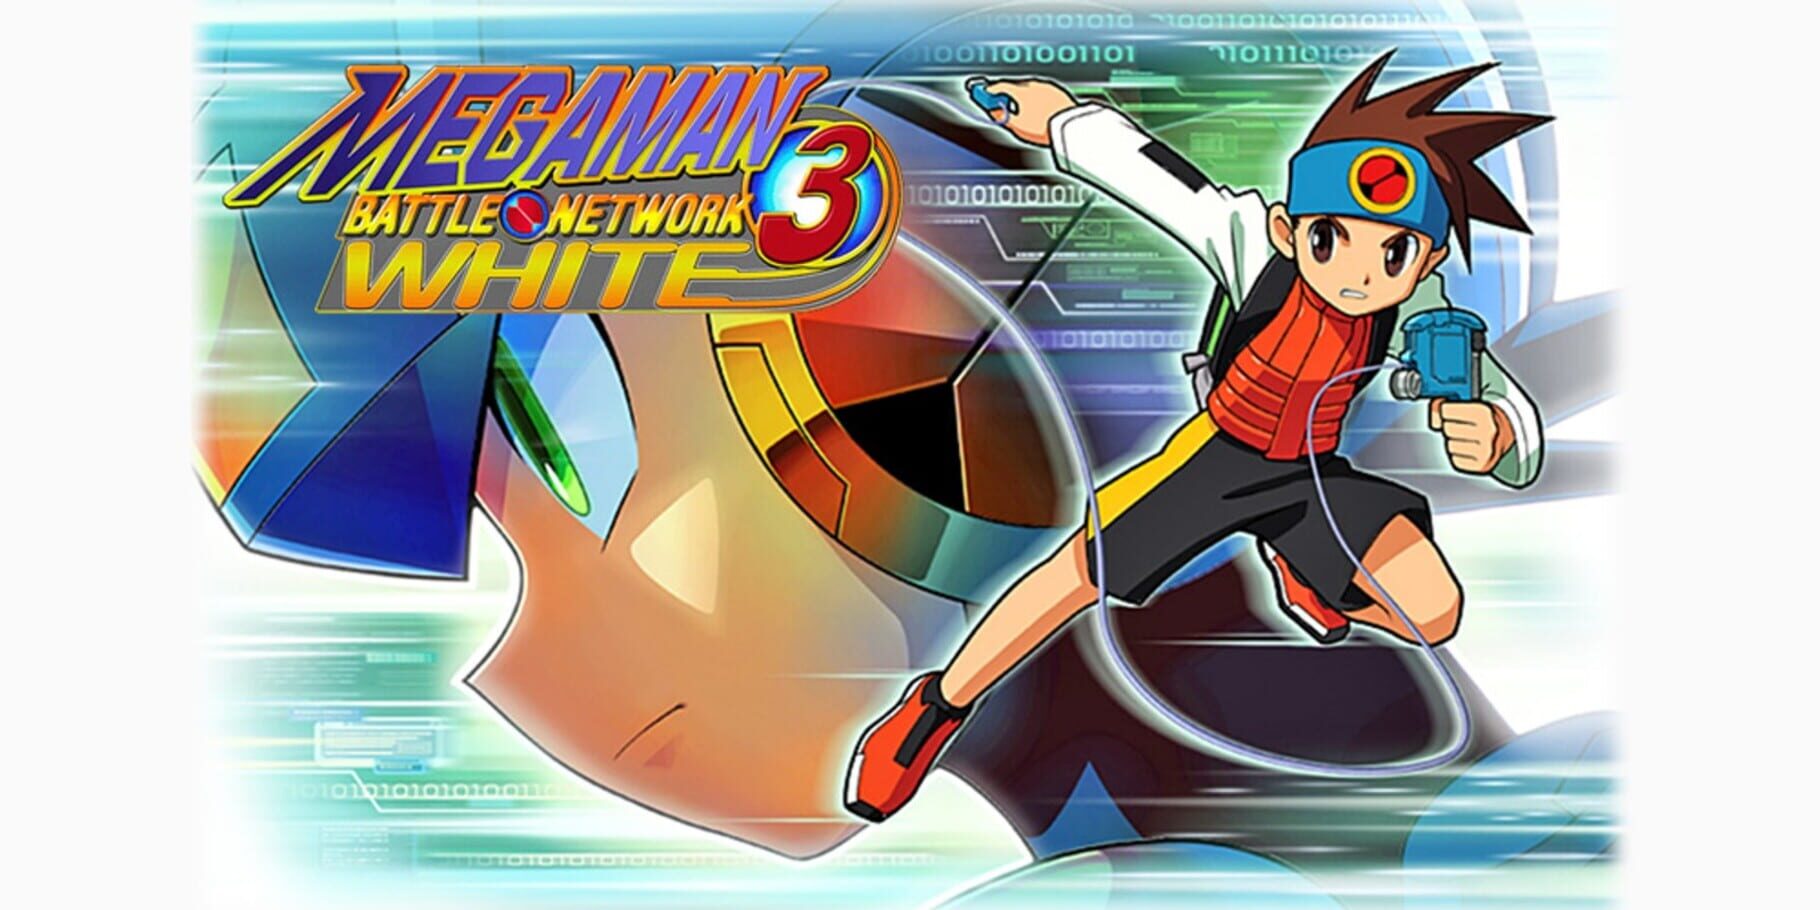 Arte - Mega Man Battle Network 3 White